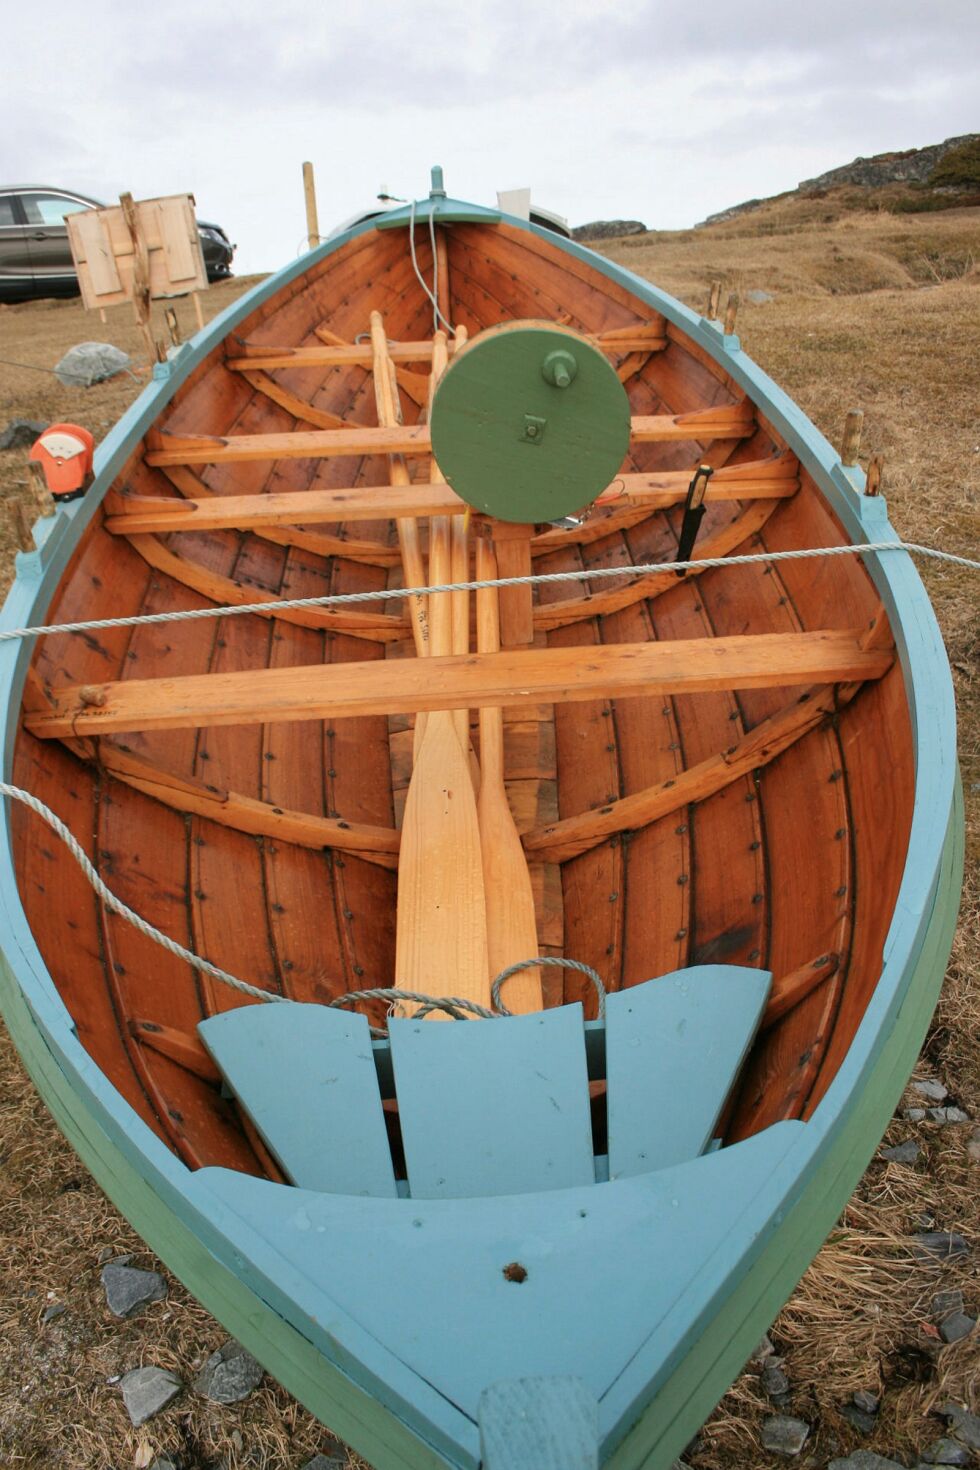 I den eldste av båtene er det montert jukse, og det henger også en kniv der, slik at fisk kan bløgges. Foto: Anthon Sivertsen